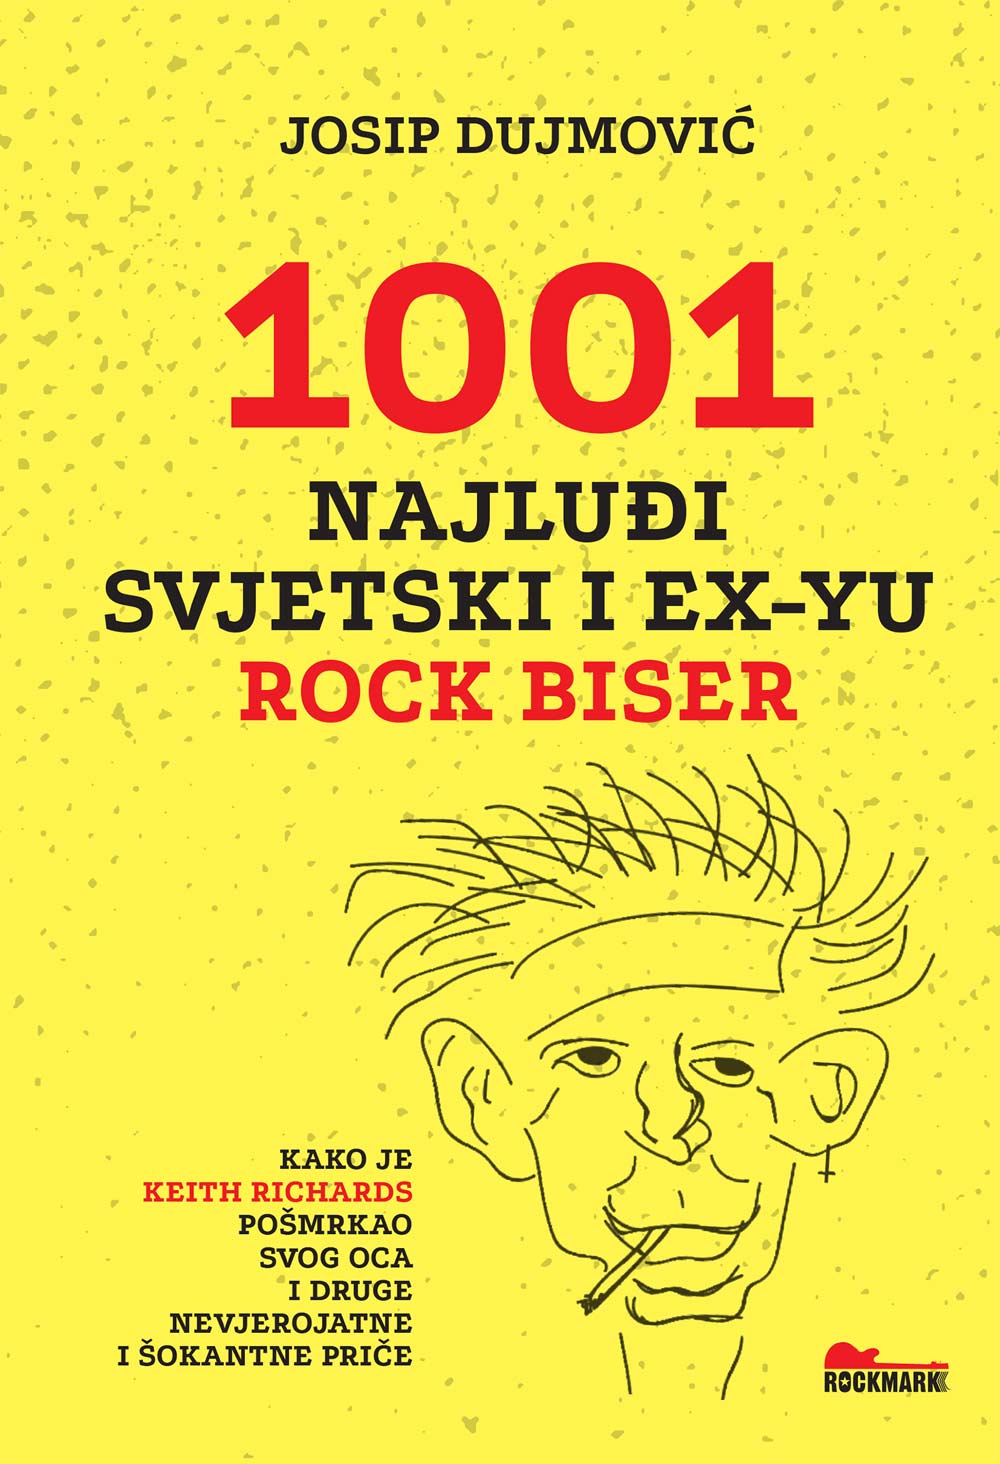 1001 najluđi svjetski i ex-yu rock biser